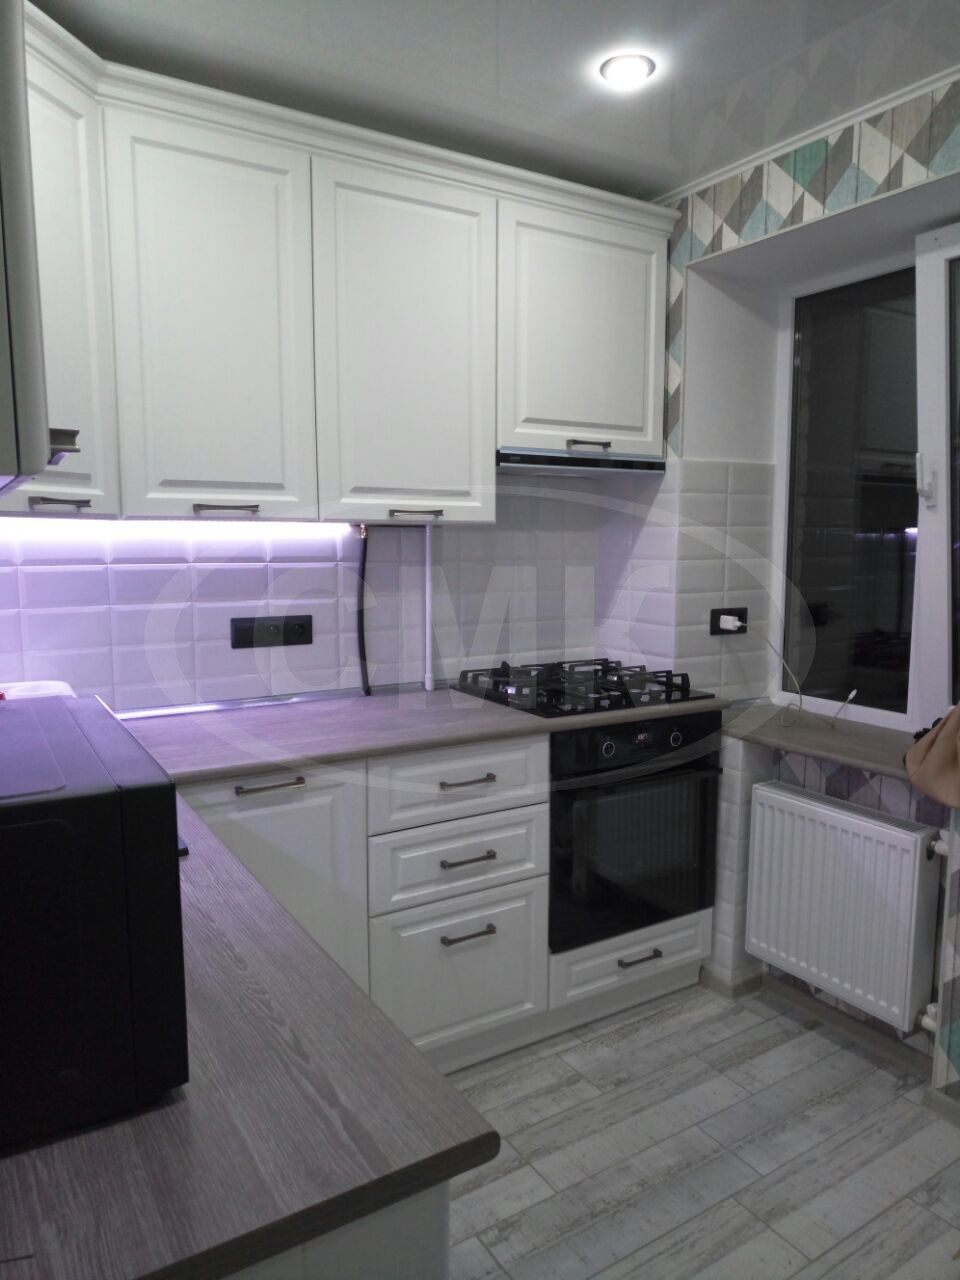 Угловая кухня на заказ с подсветкой, карниз и фасады выполнены с пленкой ПВЗ из плиты МДФ.